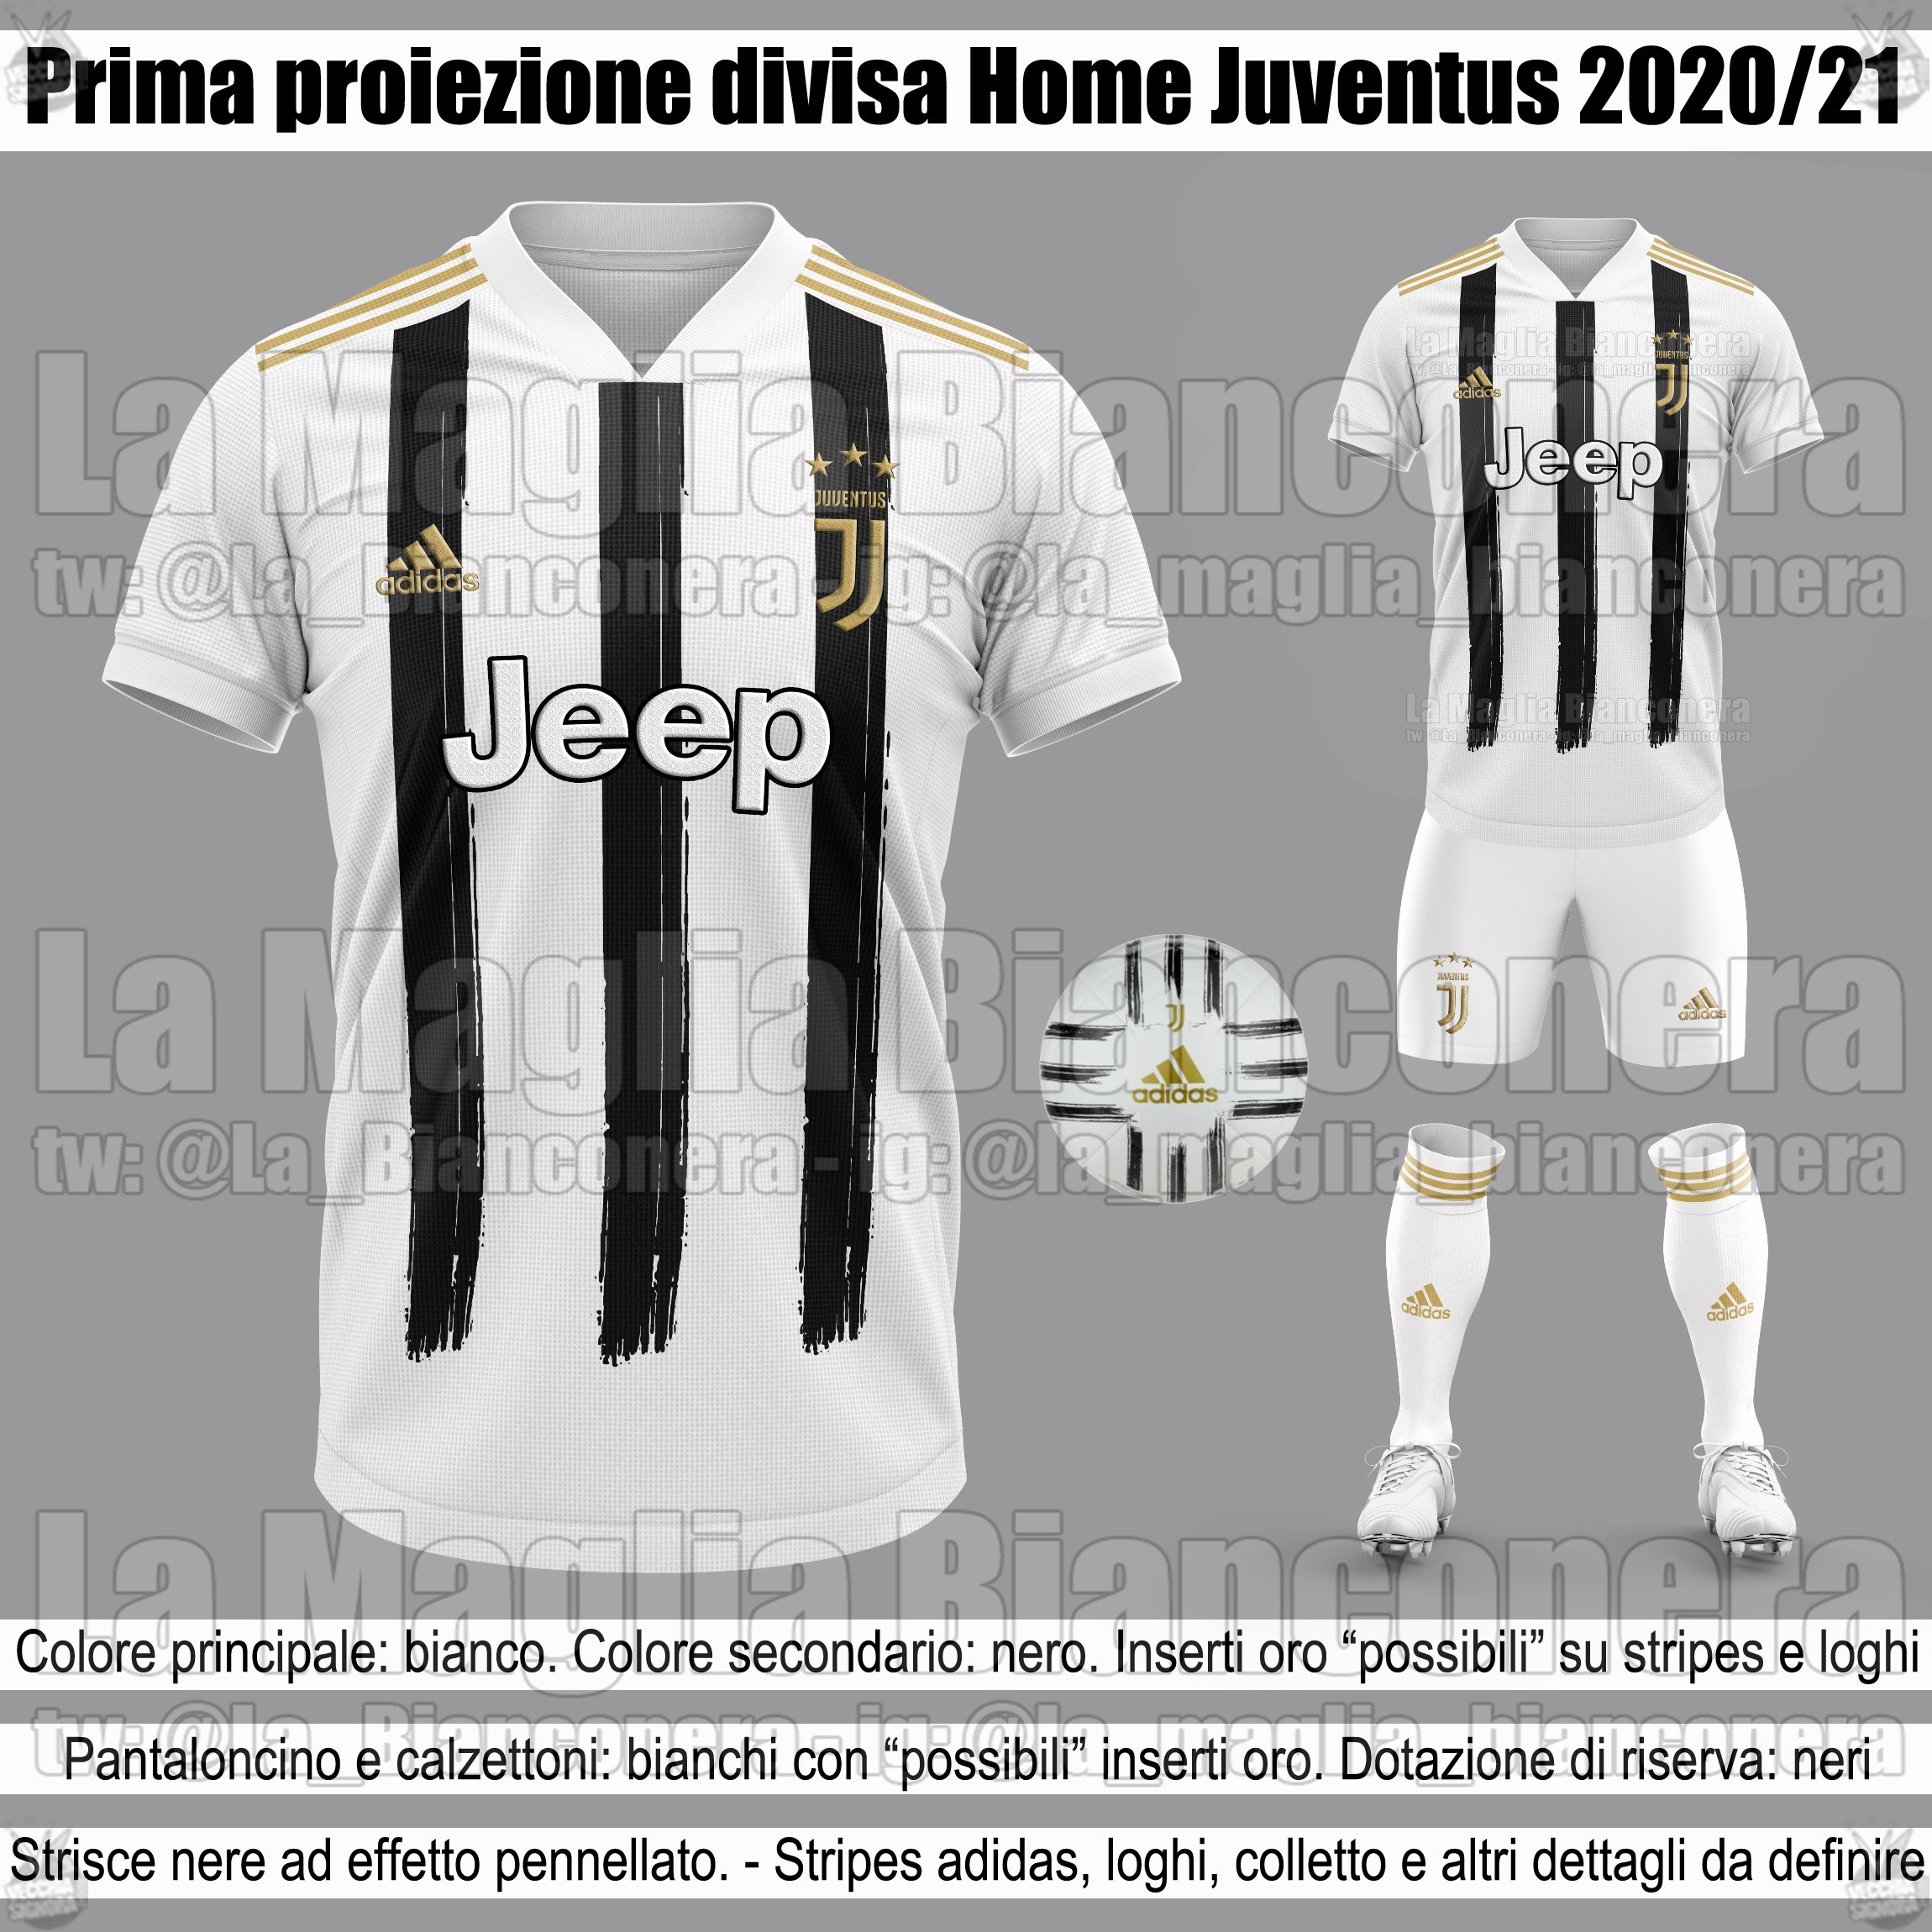 Juventus Season 2019 2020 Pagina 6 Juventus News In